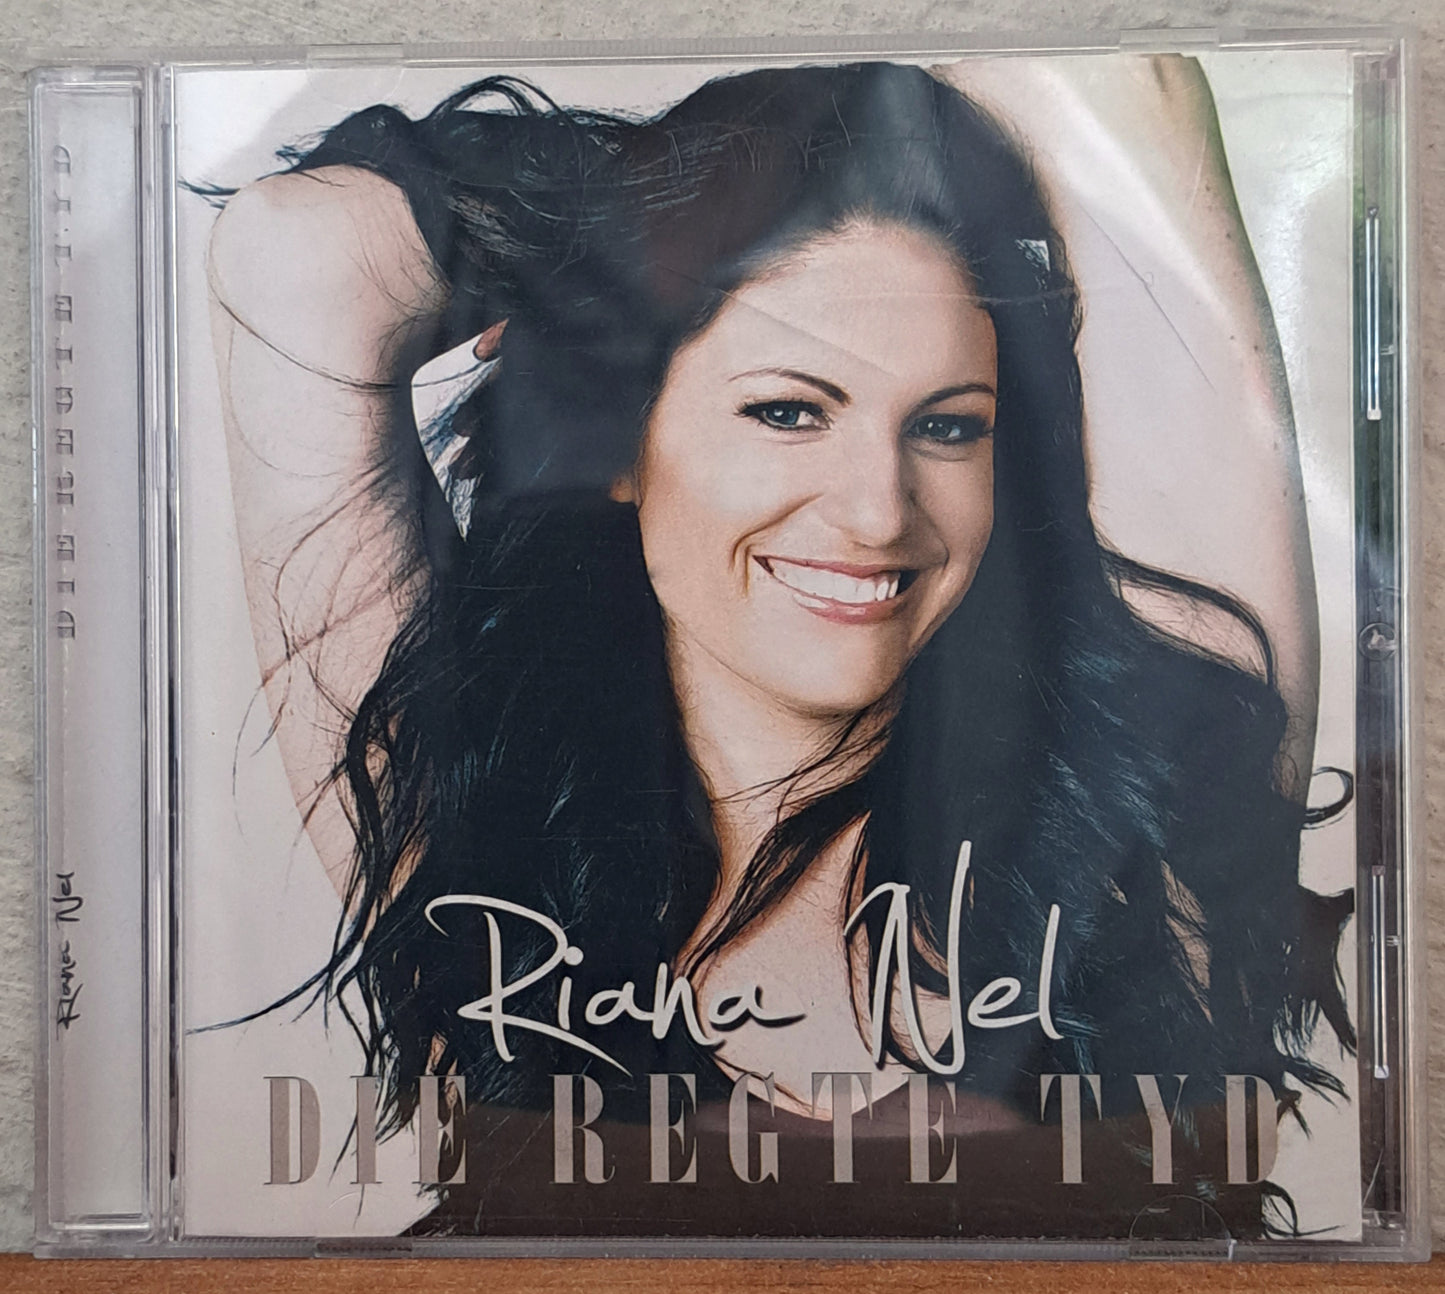 Riana Nel - Die regte tyd (cd)